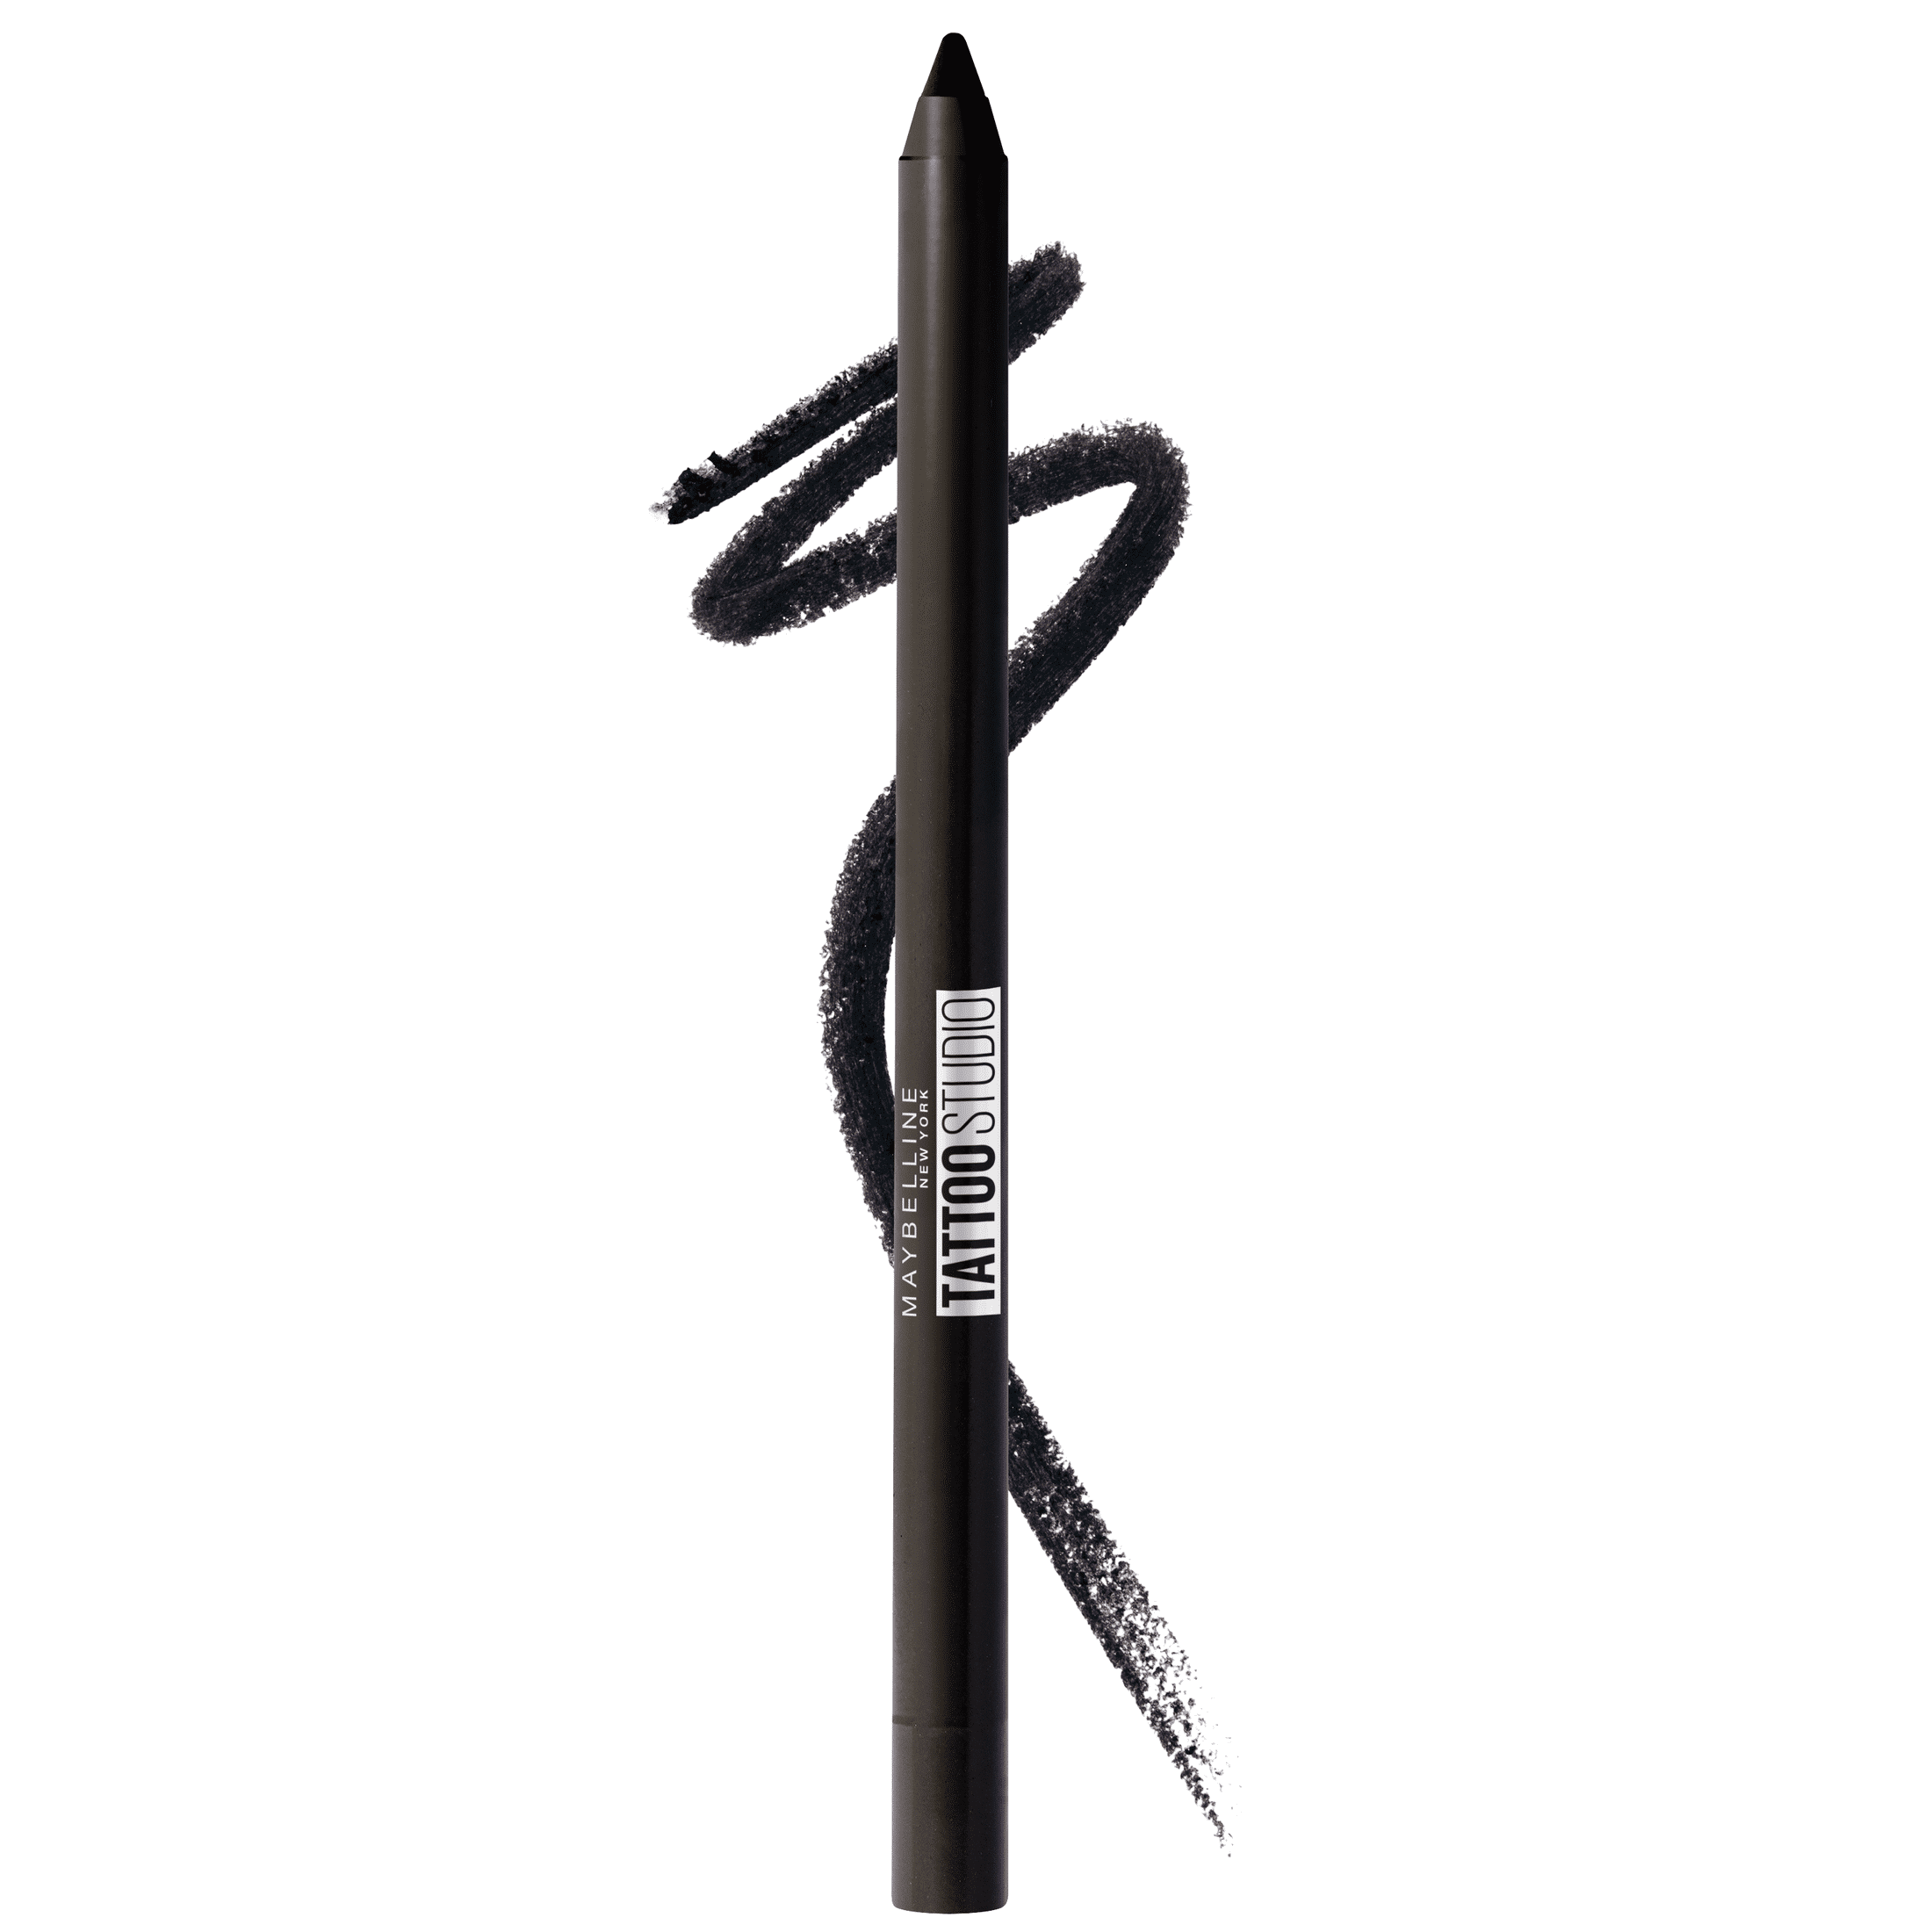 Maybelline Sky High Waterproof Mascara Makeup, Very Black + Maybelline New  York Tattoo Studio Ink Pen Eyeliner Jet Black Bundle